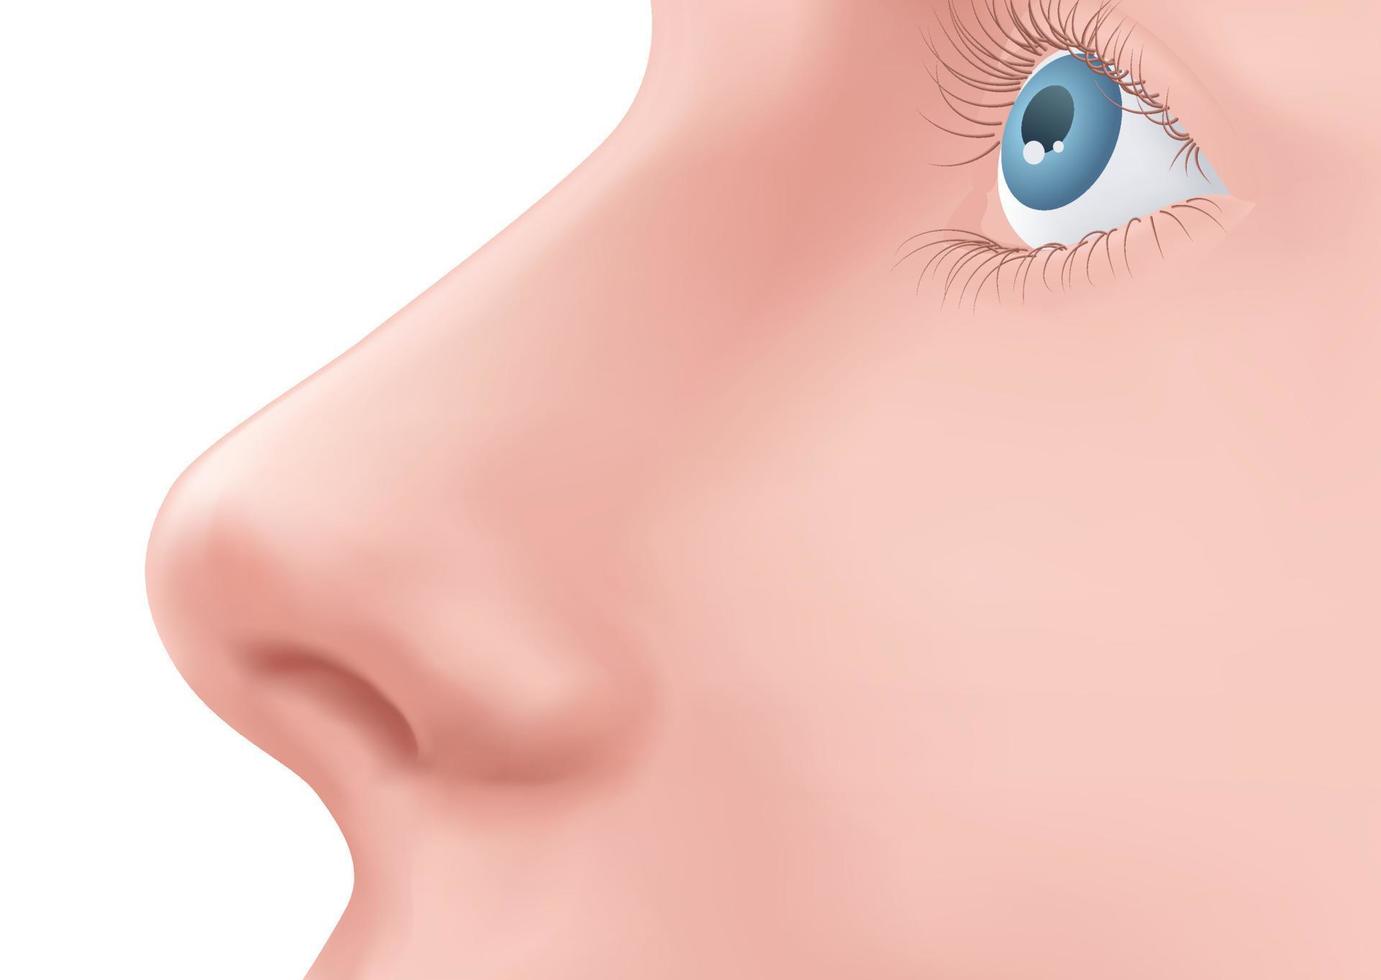 vue de profil nez humain et oeil bleu avec des cils sur le visage illustration réaliste pour la médecine, isolé sur le vecteur de conception de fond blanc. exemple de rhinoplastie. partie du corps pour la biologie.